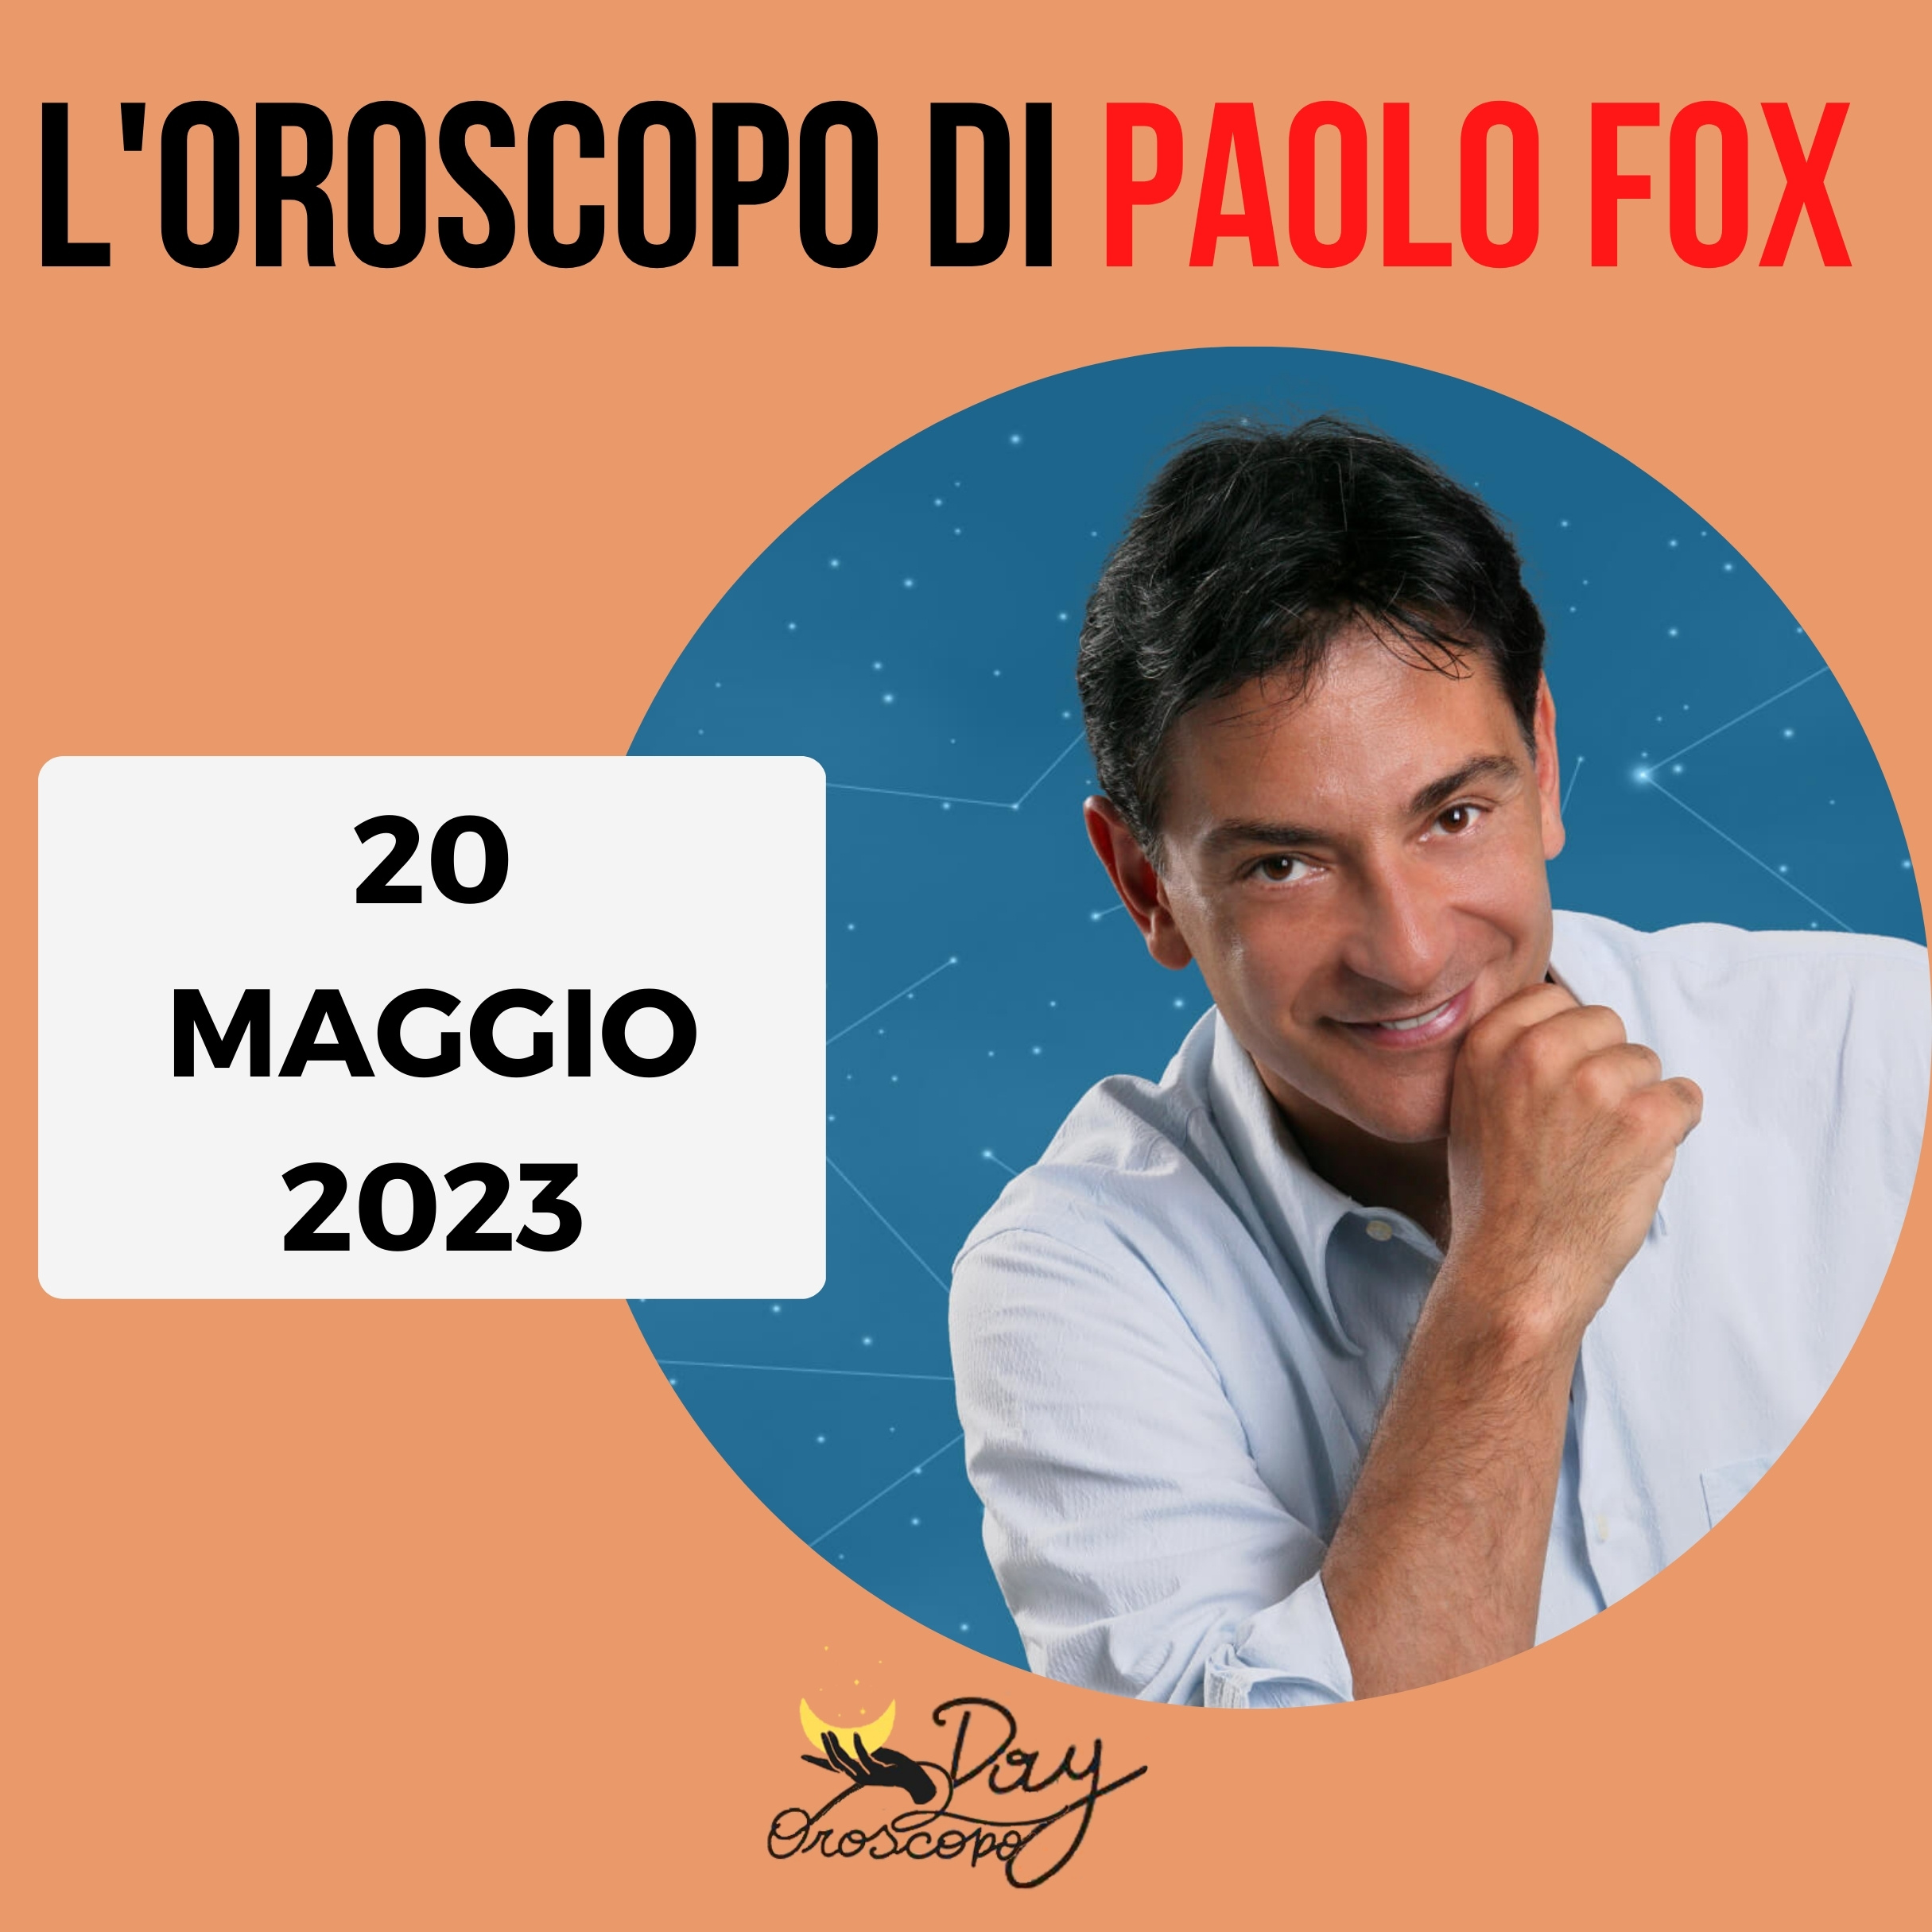 Oroscopo oggi domani Paolo Fox 20 maggio 2023